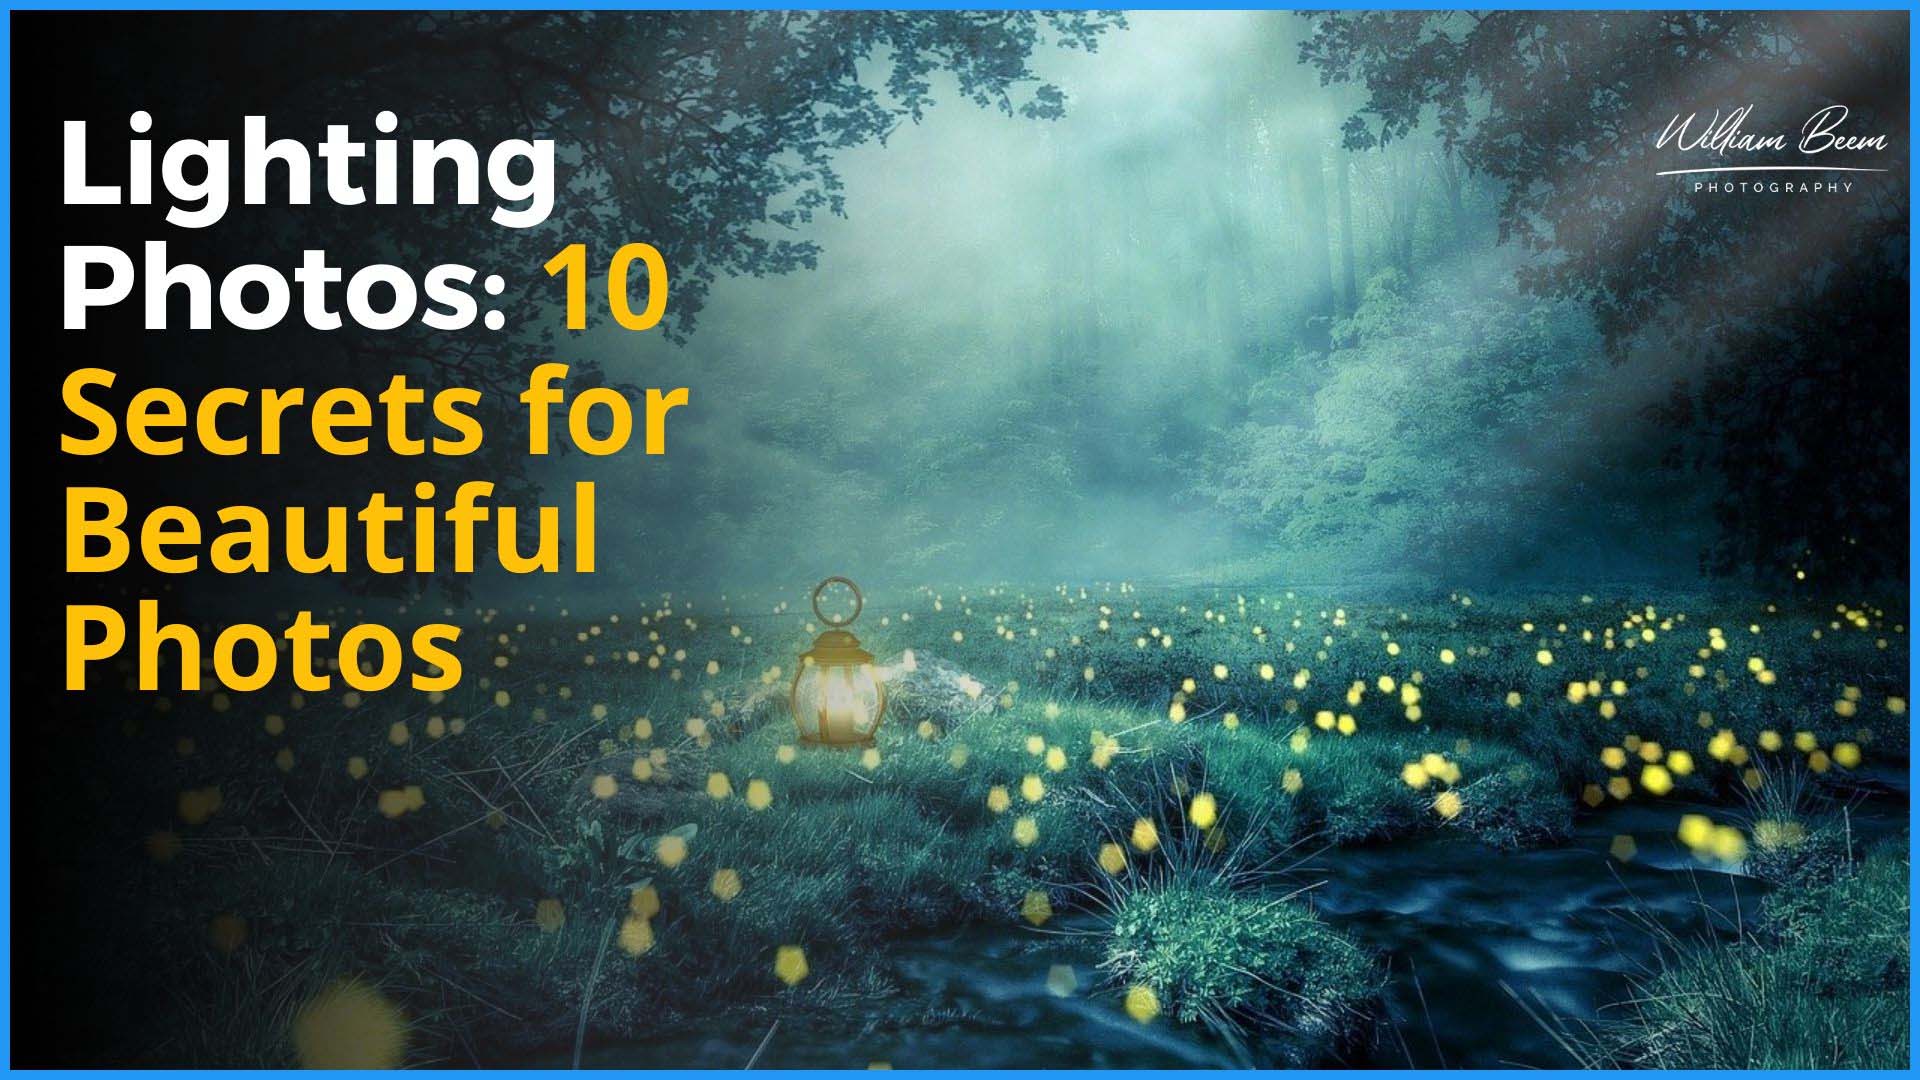 Lighting Photos: 10 Secrets for Beautiful Photos